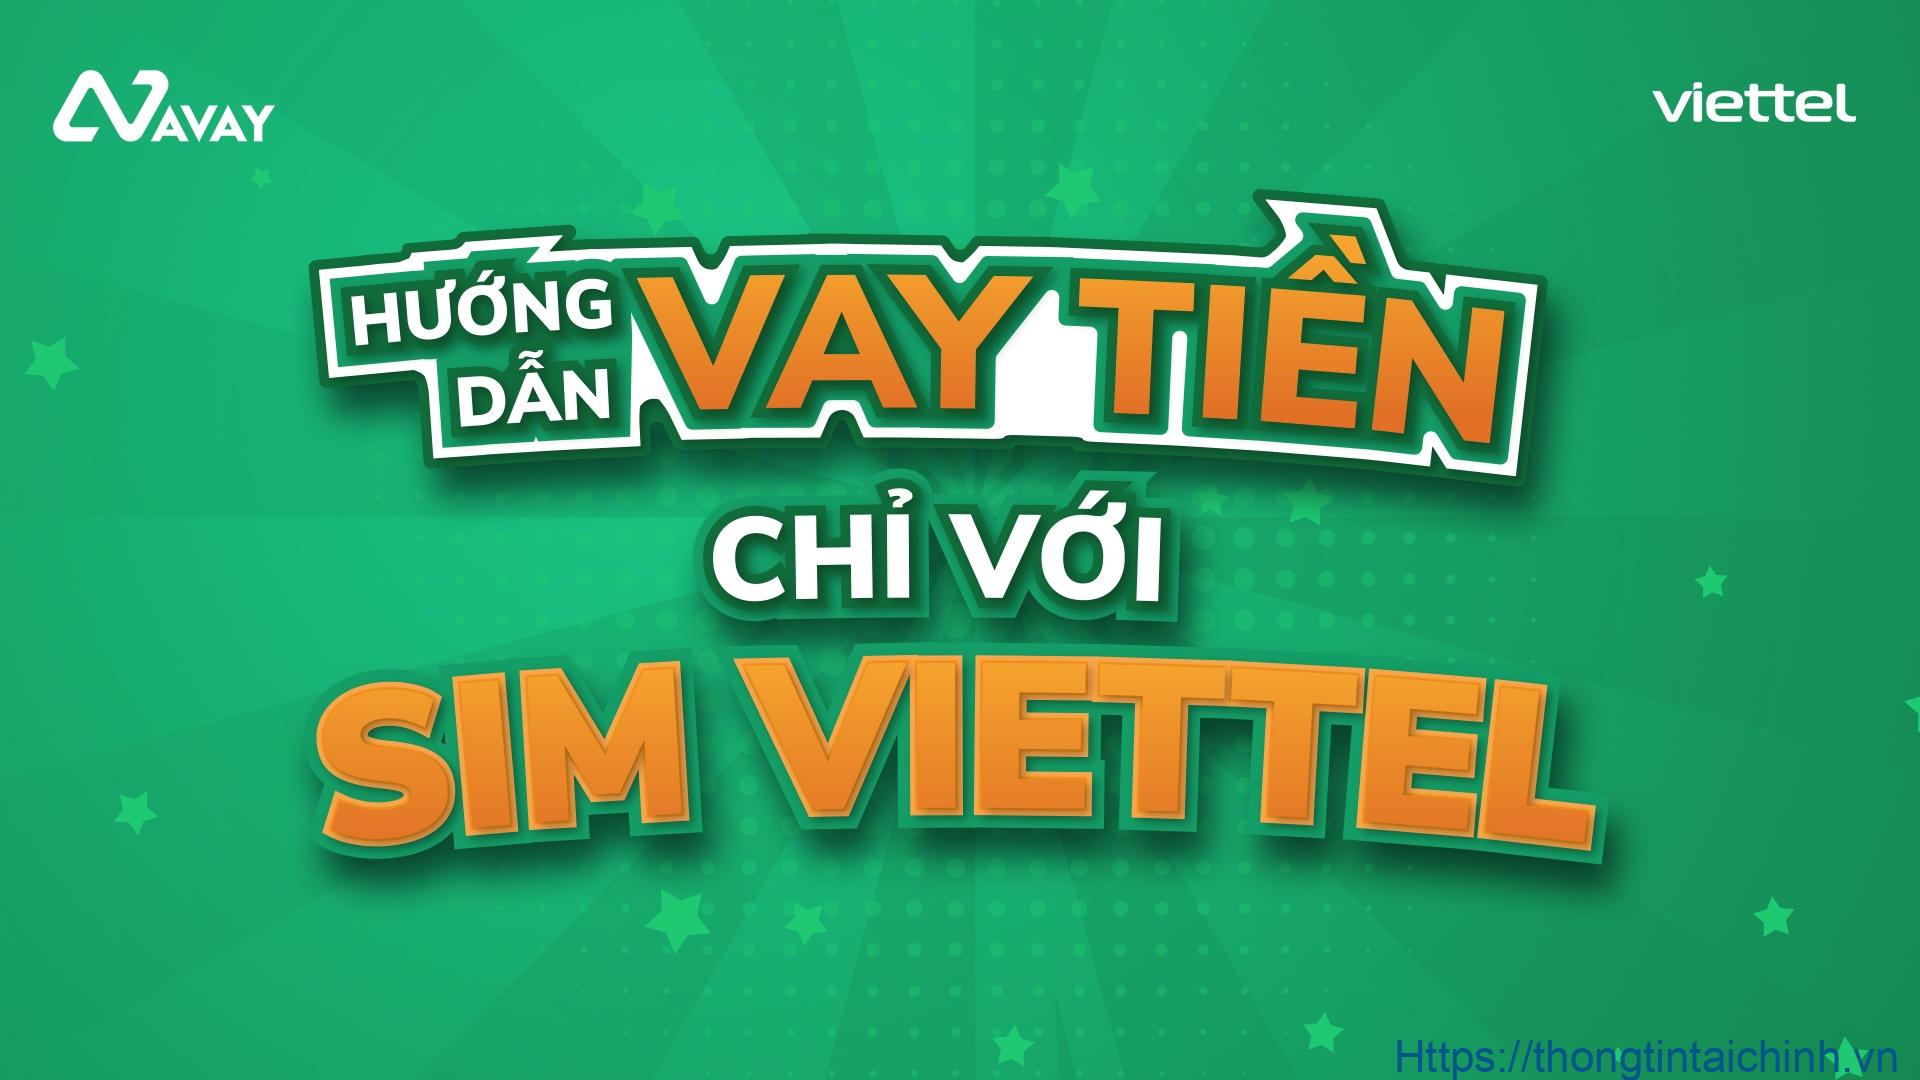 Avay là địa chỉ cho vay qua sim Viettel uy tín với hạn mức lên đến 80 triệu đồng